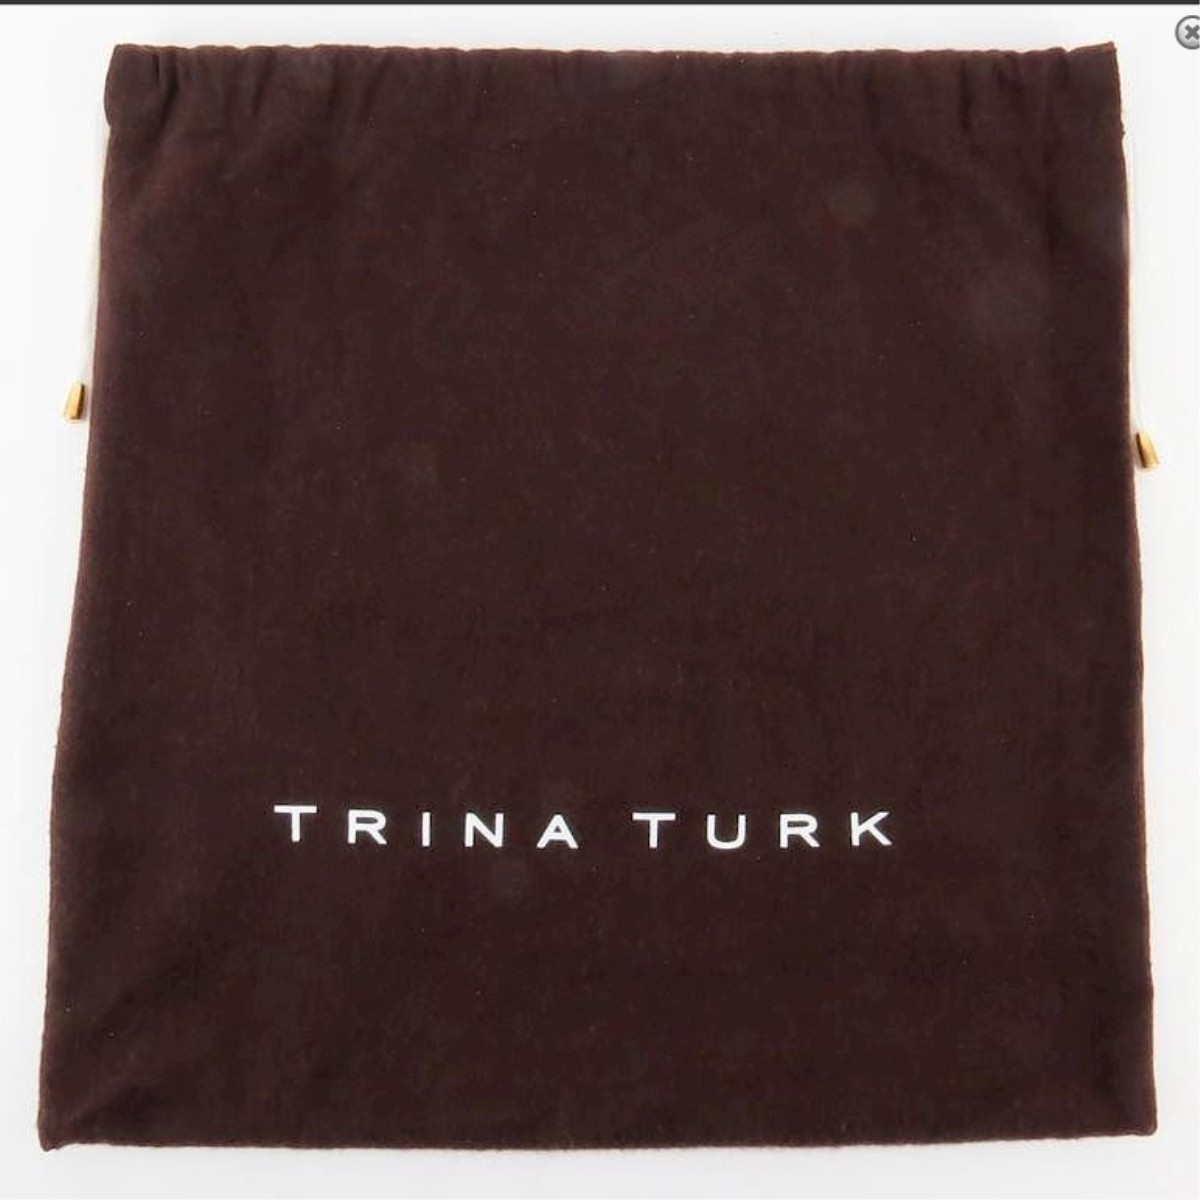 Trina Turk Hot Pink Leather Clutch